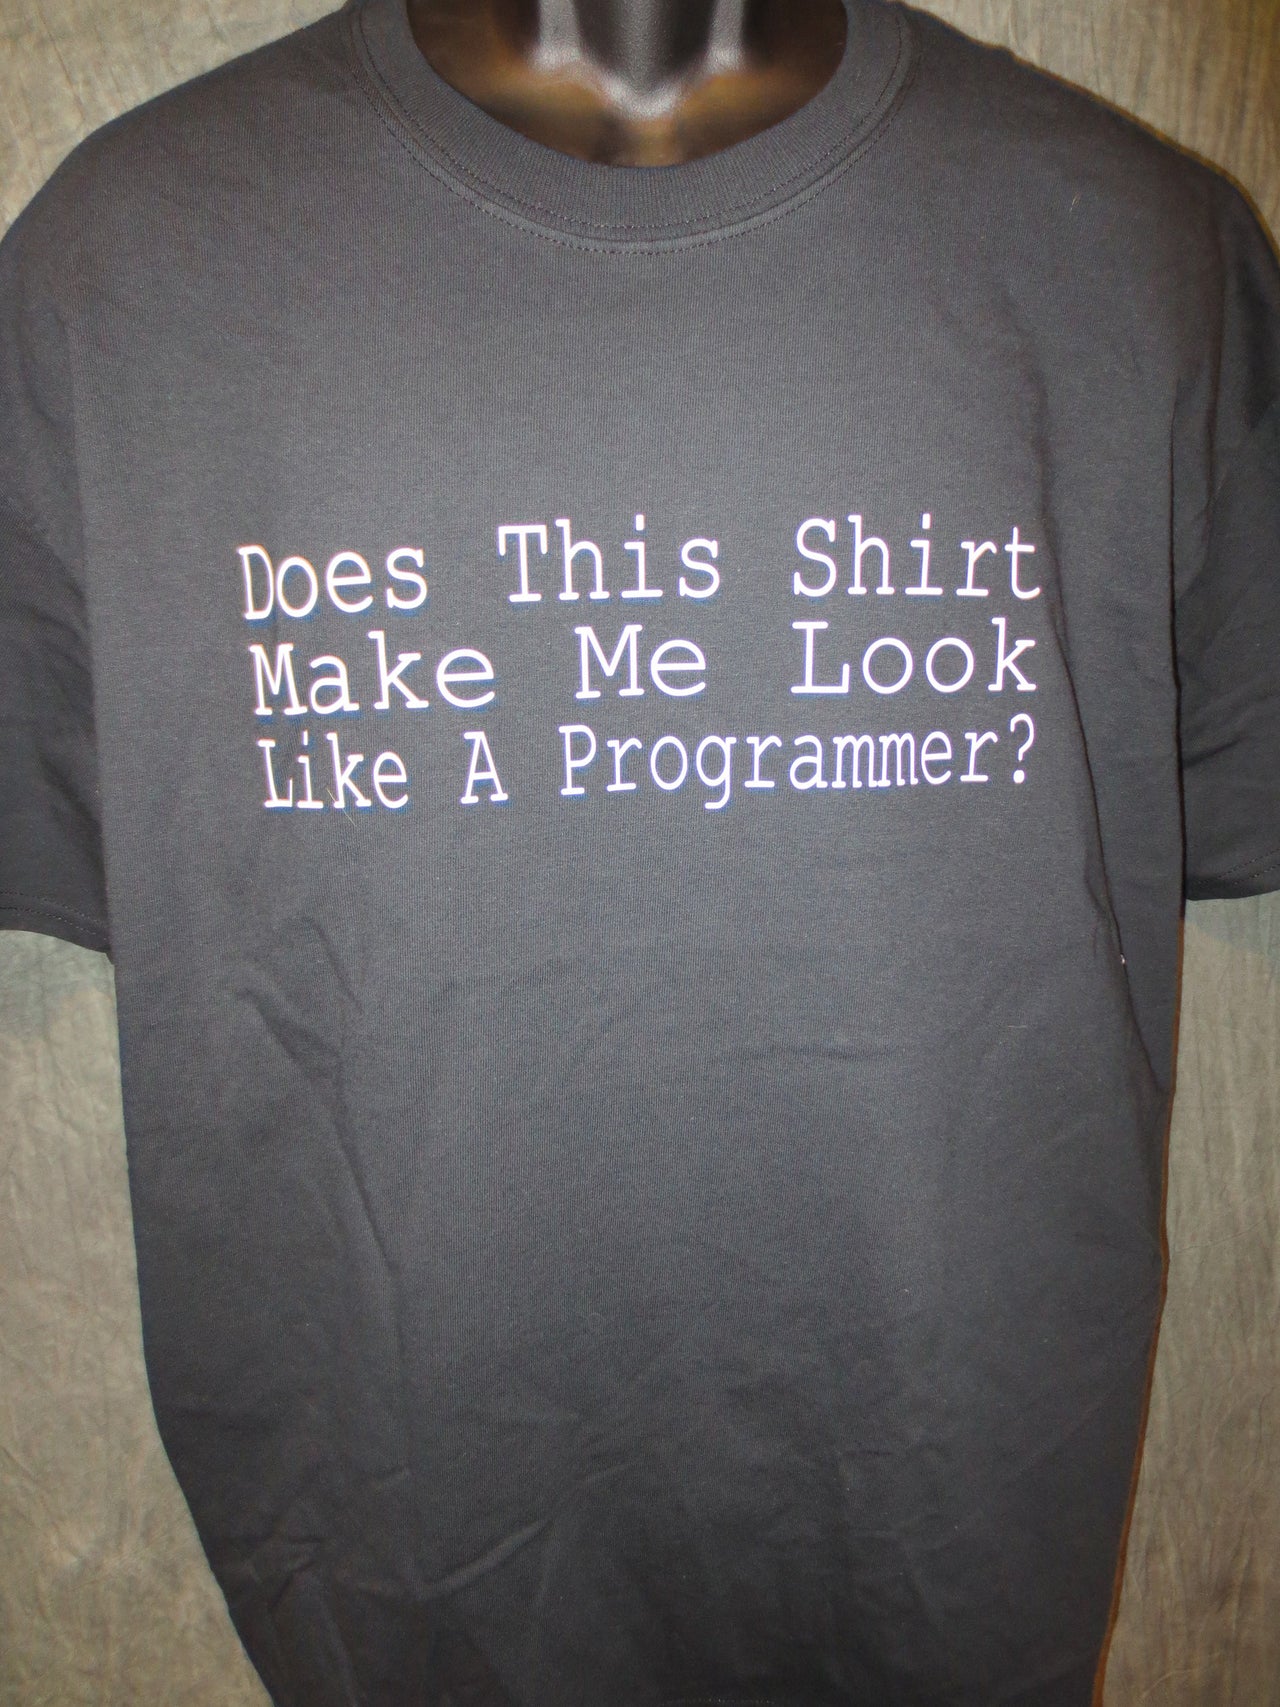 Does This Shirt Make Me Look Like A Programmer Tshirt: Black With White Print - TshirtNow.net - 3